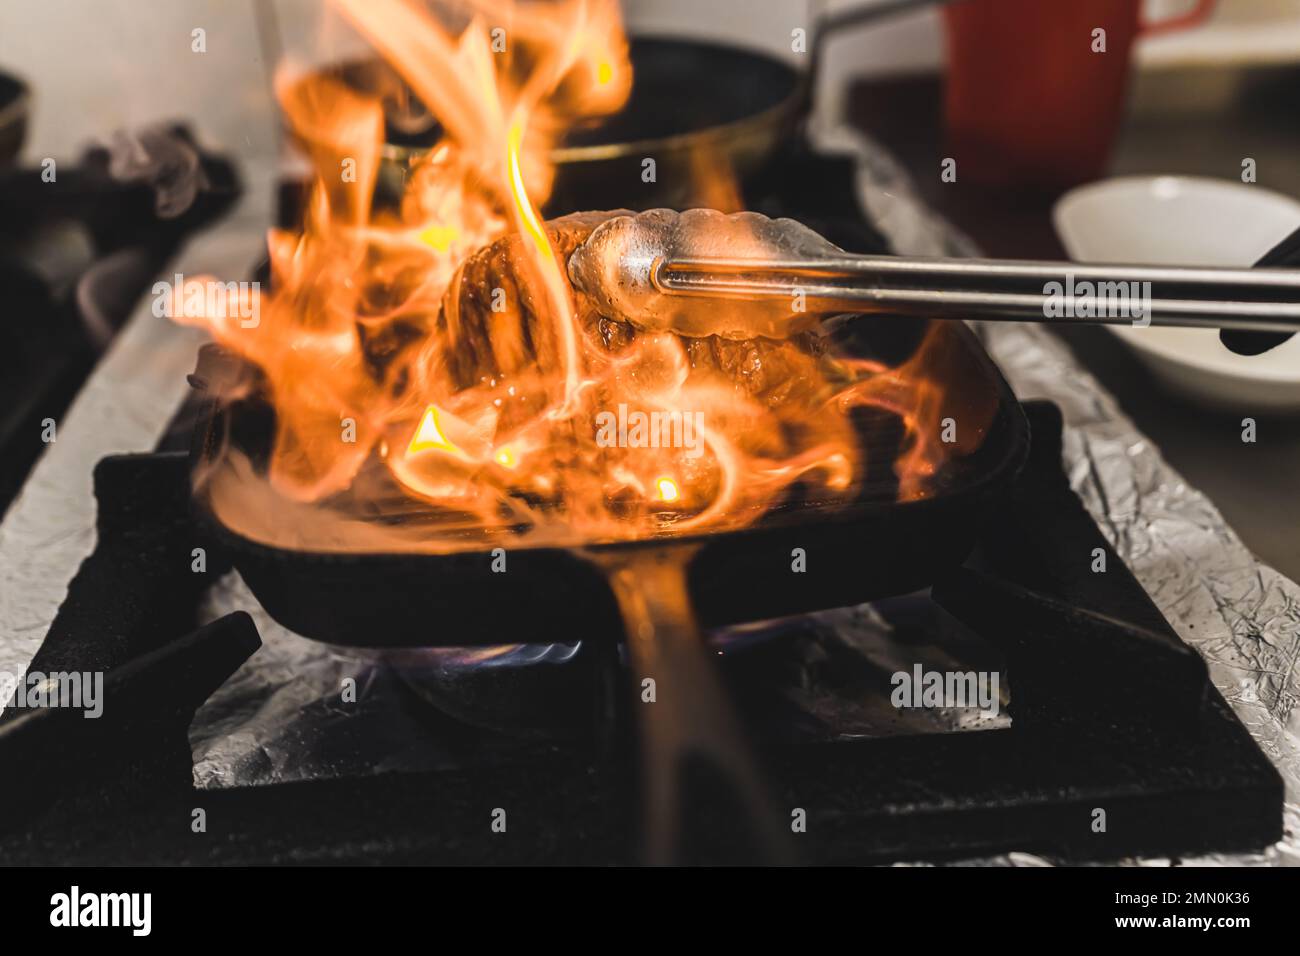 Eine unbekannte Person, die Streifenfilet-Steak mit Zange umwirft. Flammende Grillpfanne. Zubereitung von Speisen im Restaurant. Horizontale Indoor-Aufnahme. Hochwertiges Foto Stockfoto